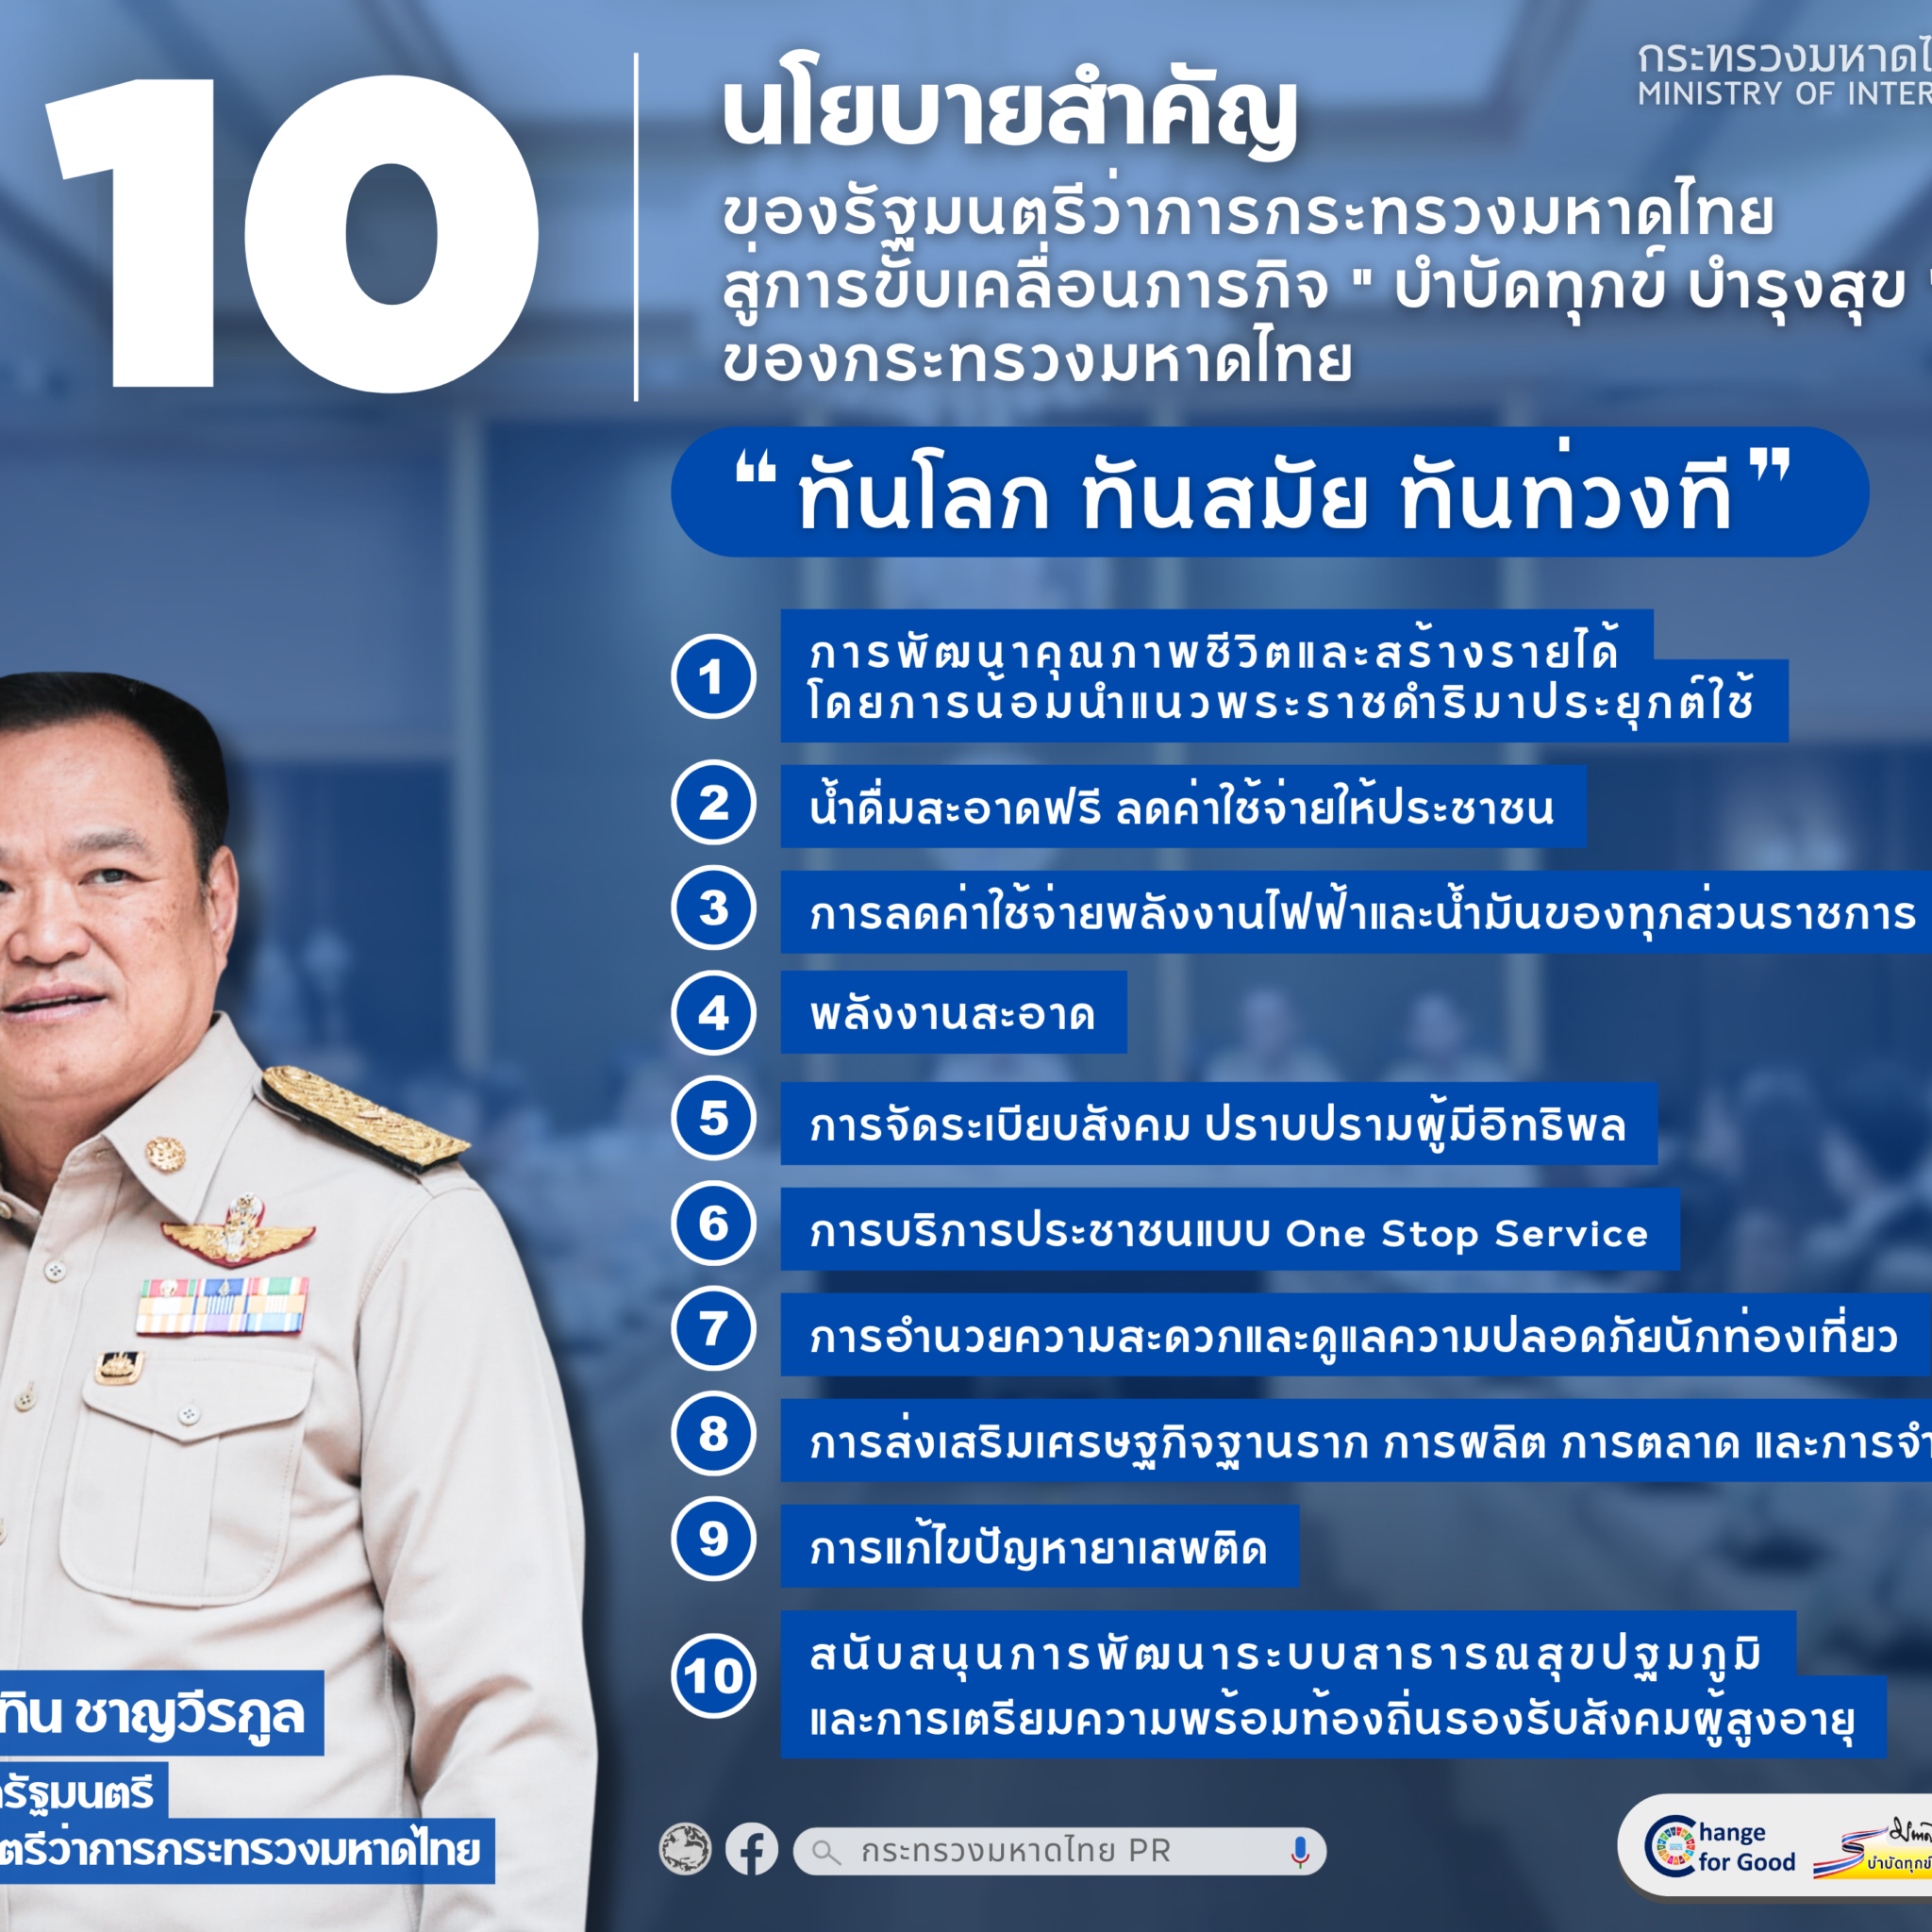 10 นโยบายสำคัญของรัฐมนตรีว่าการกระทรวงมหาดไทย